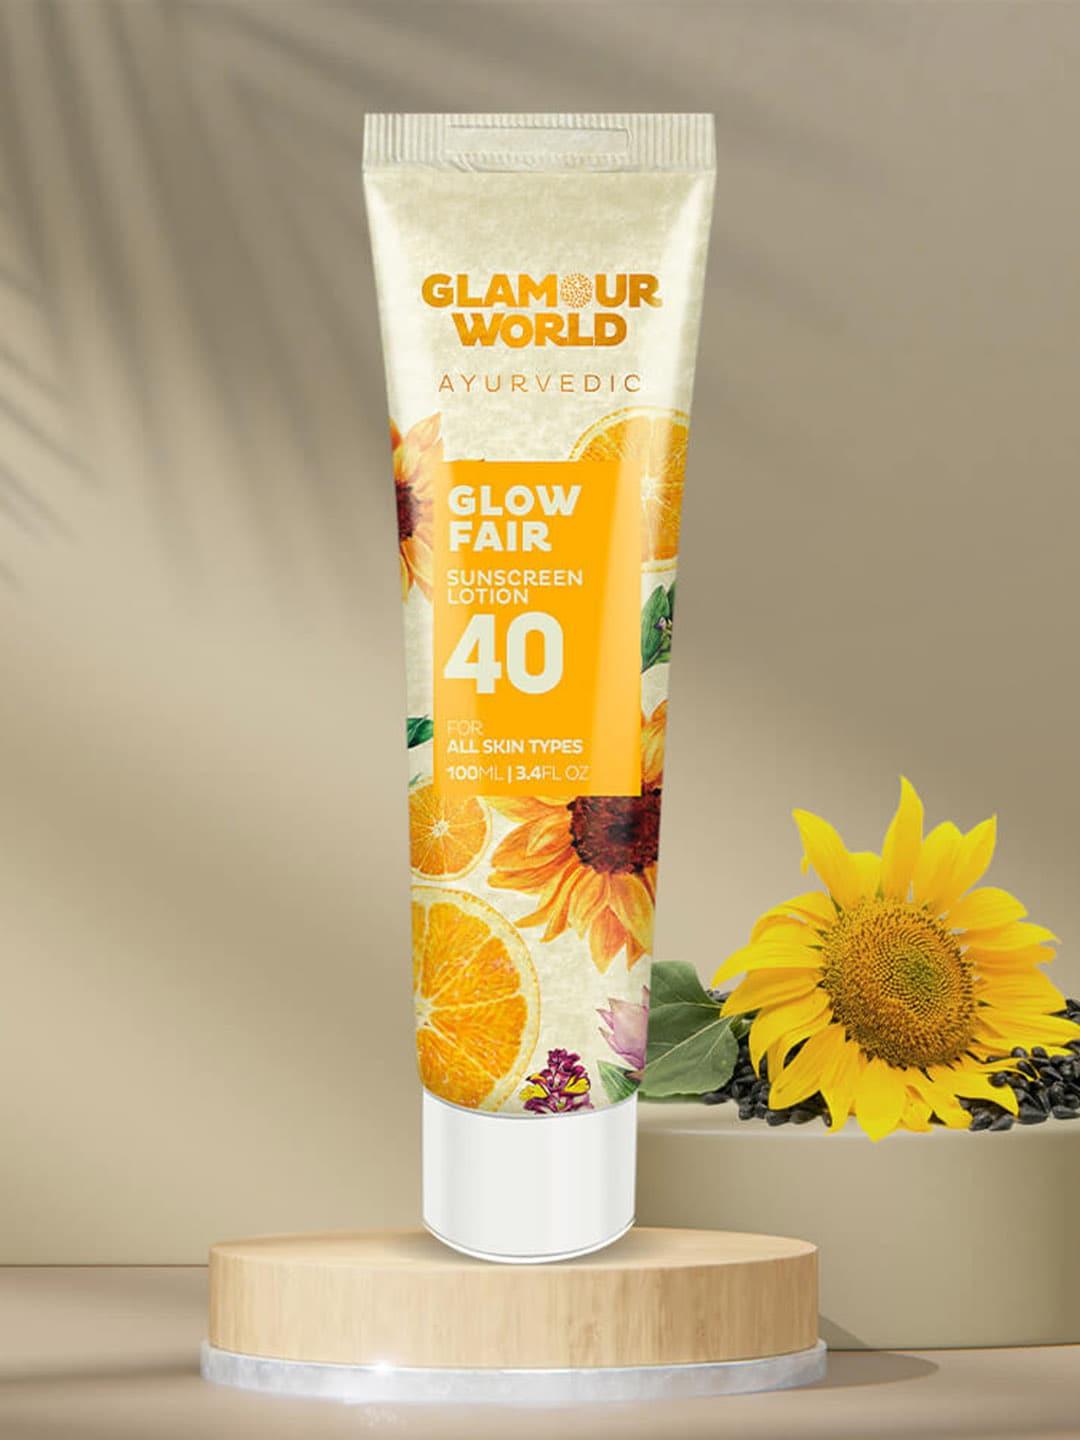 Glamour World Ayurvedic Glow Fair 40 Sunscreen - 100ml